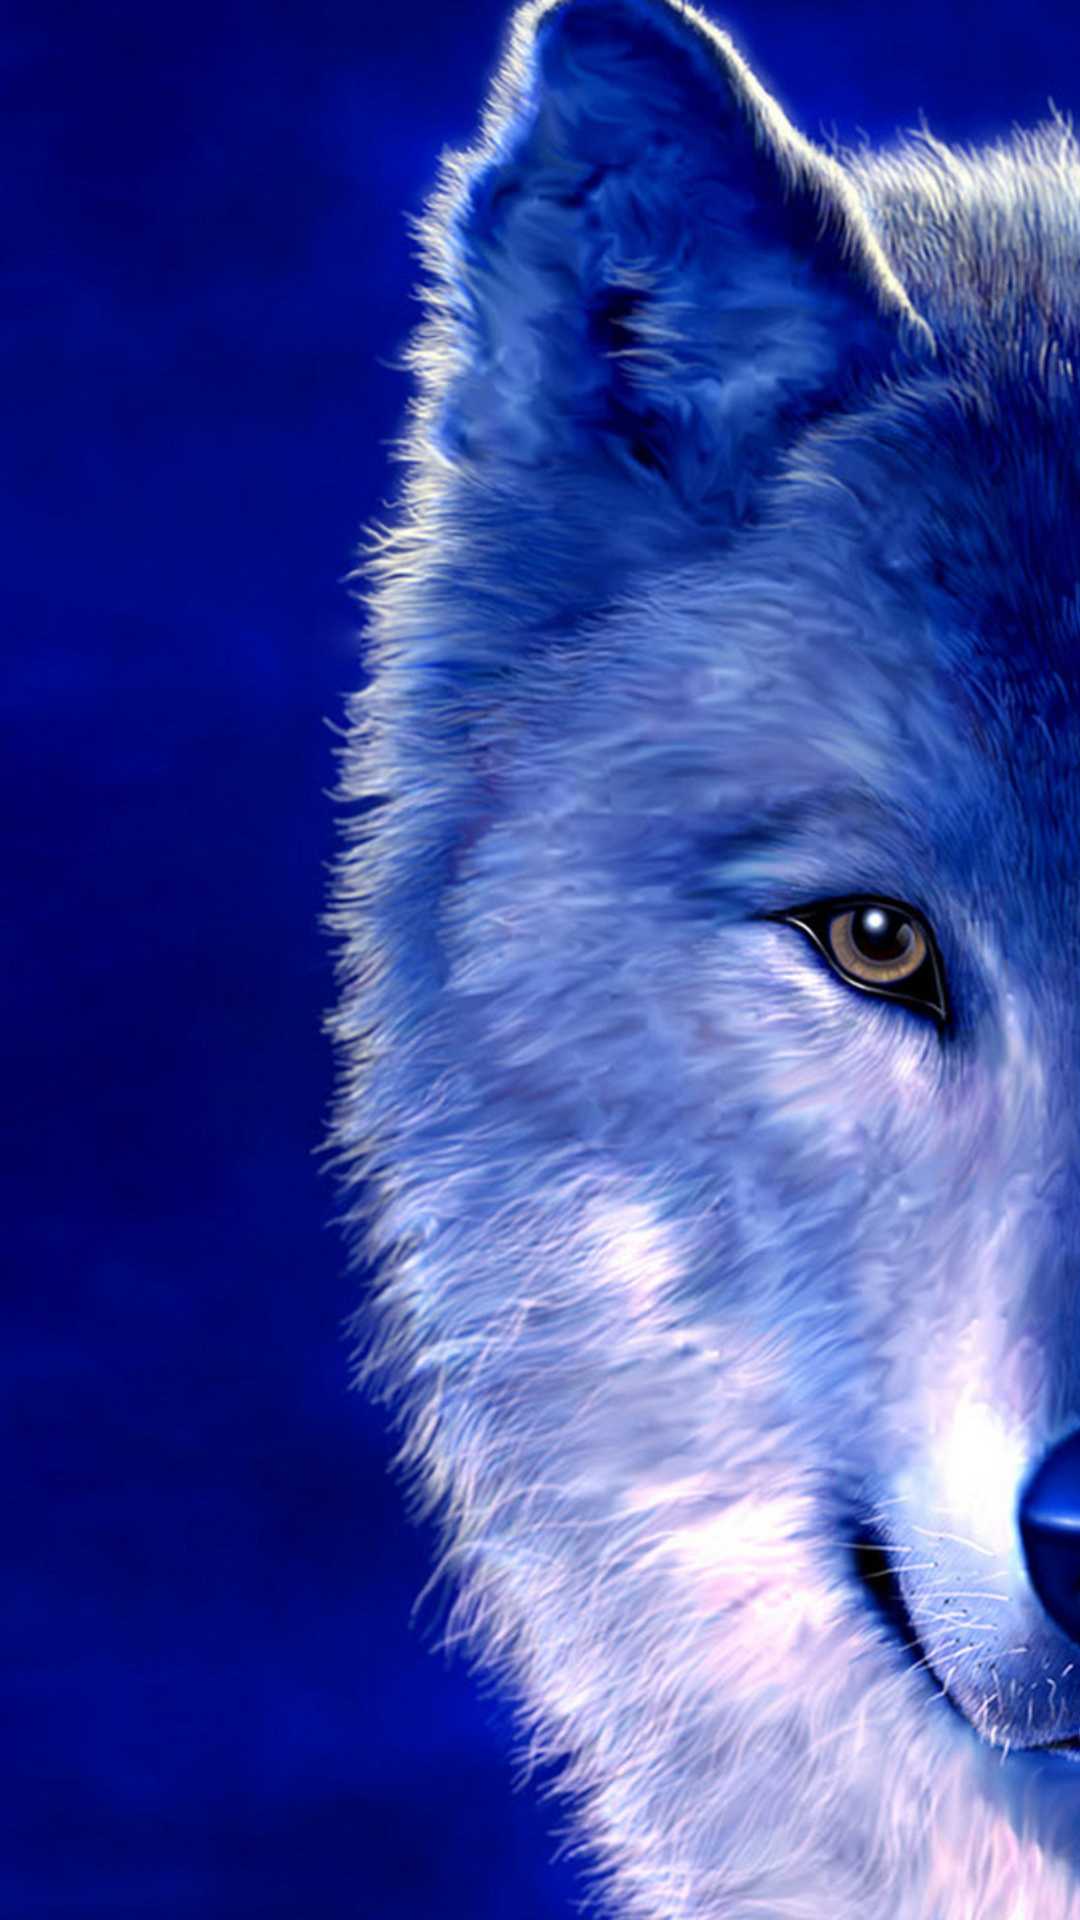 1080p Blue Wolf Wallpaper